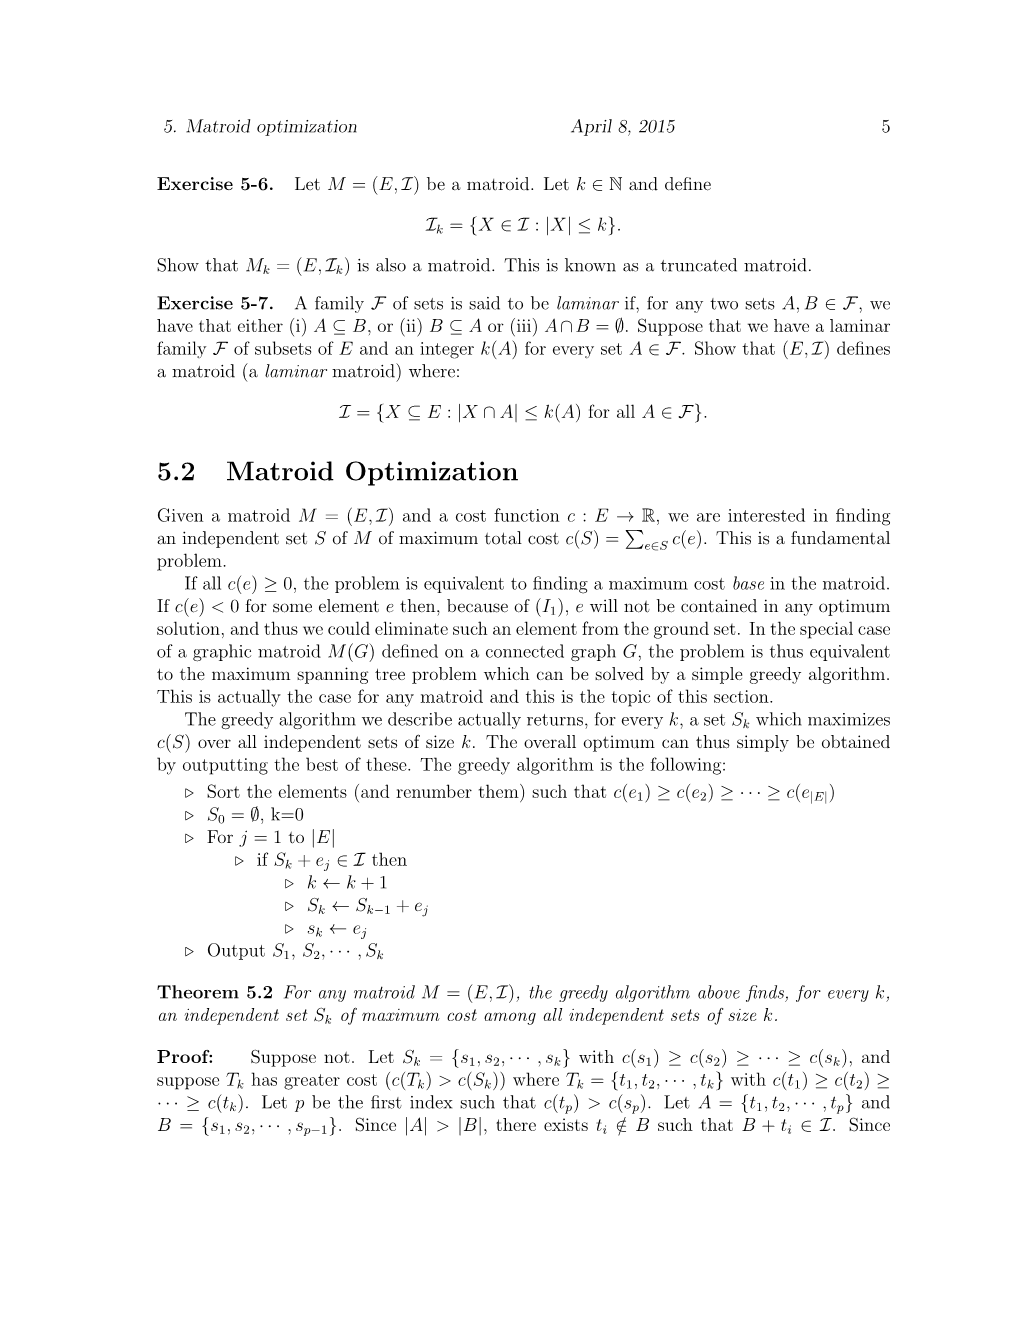 5.2 Matroid Optimization